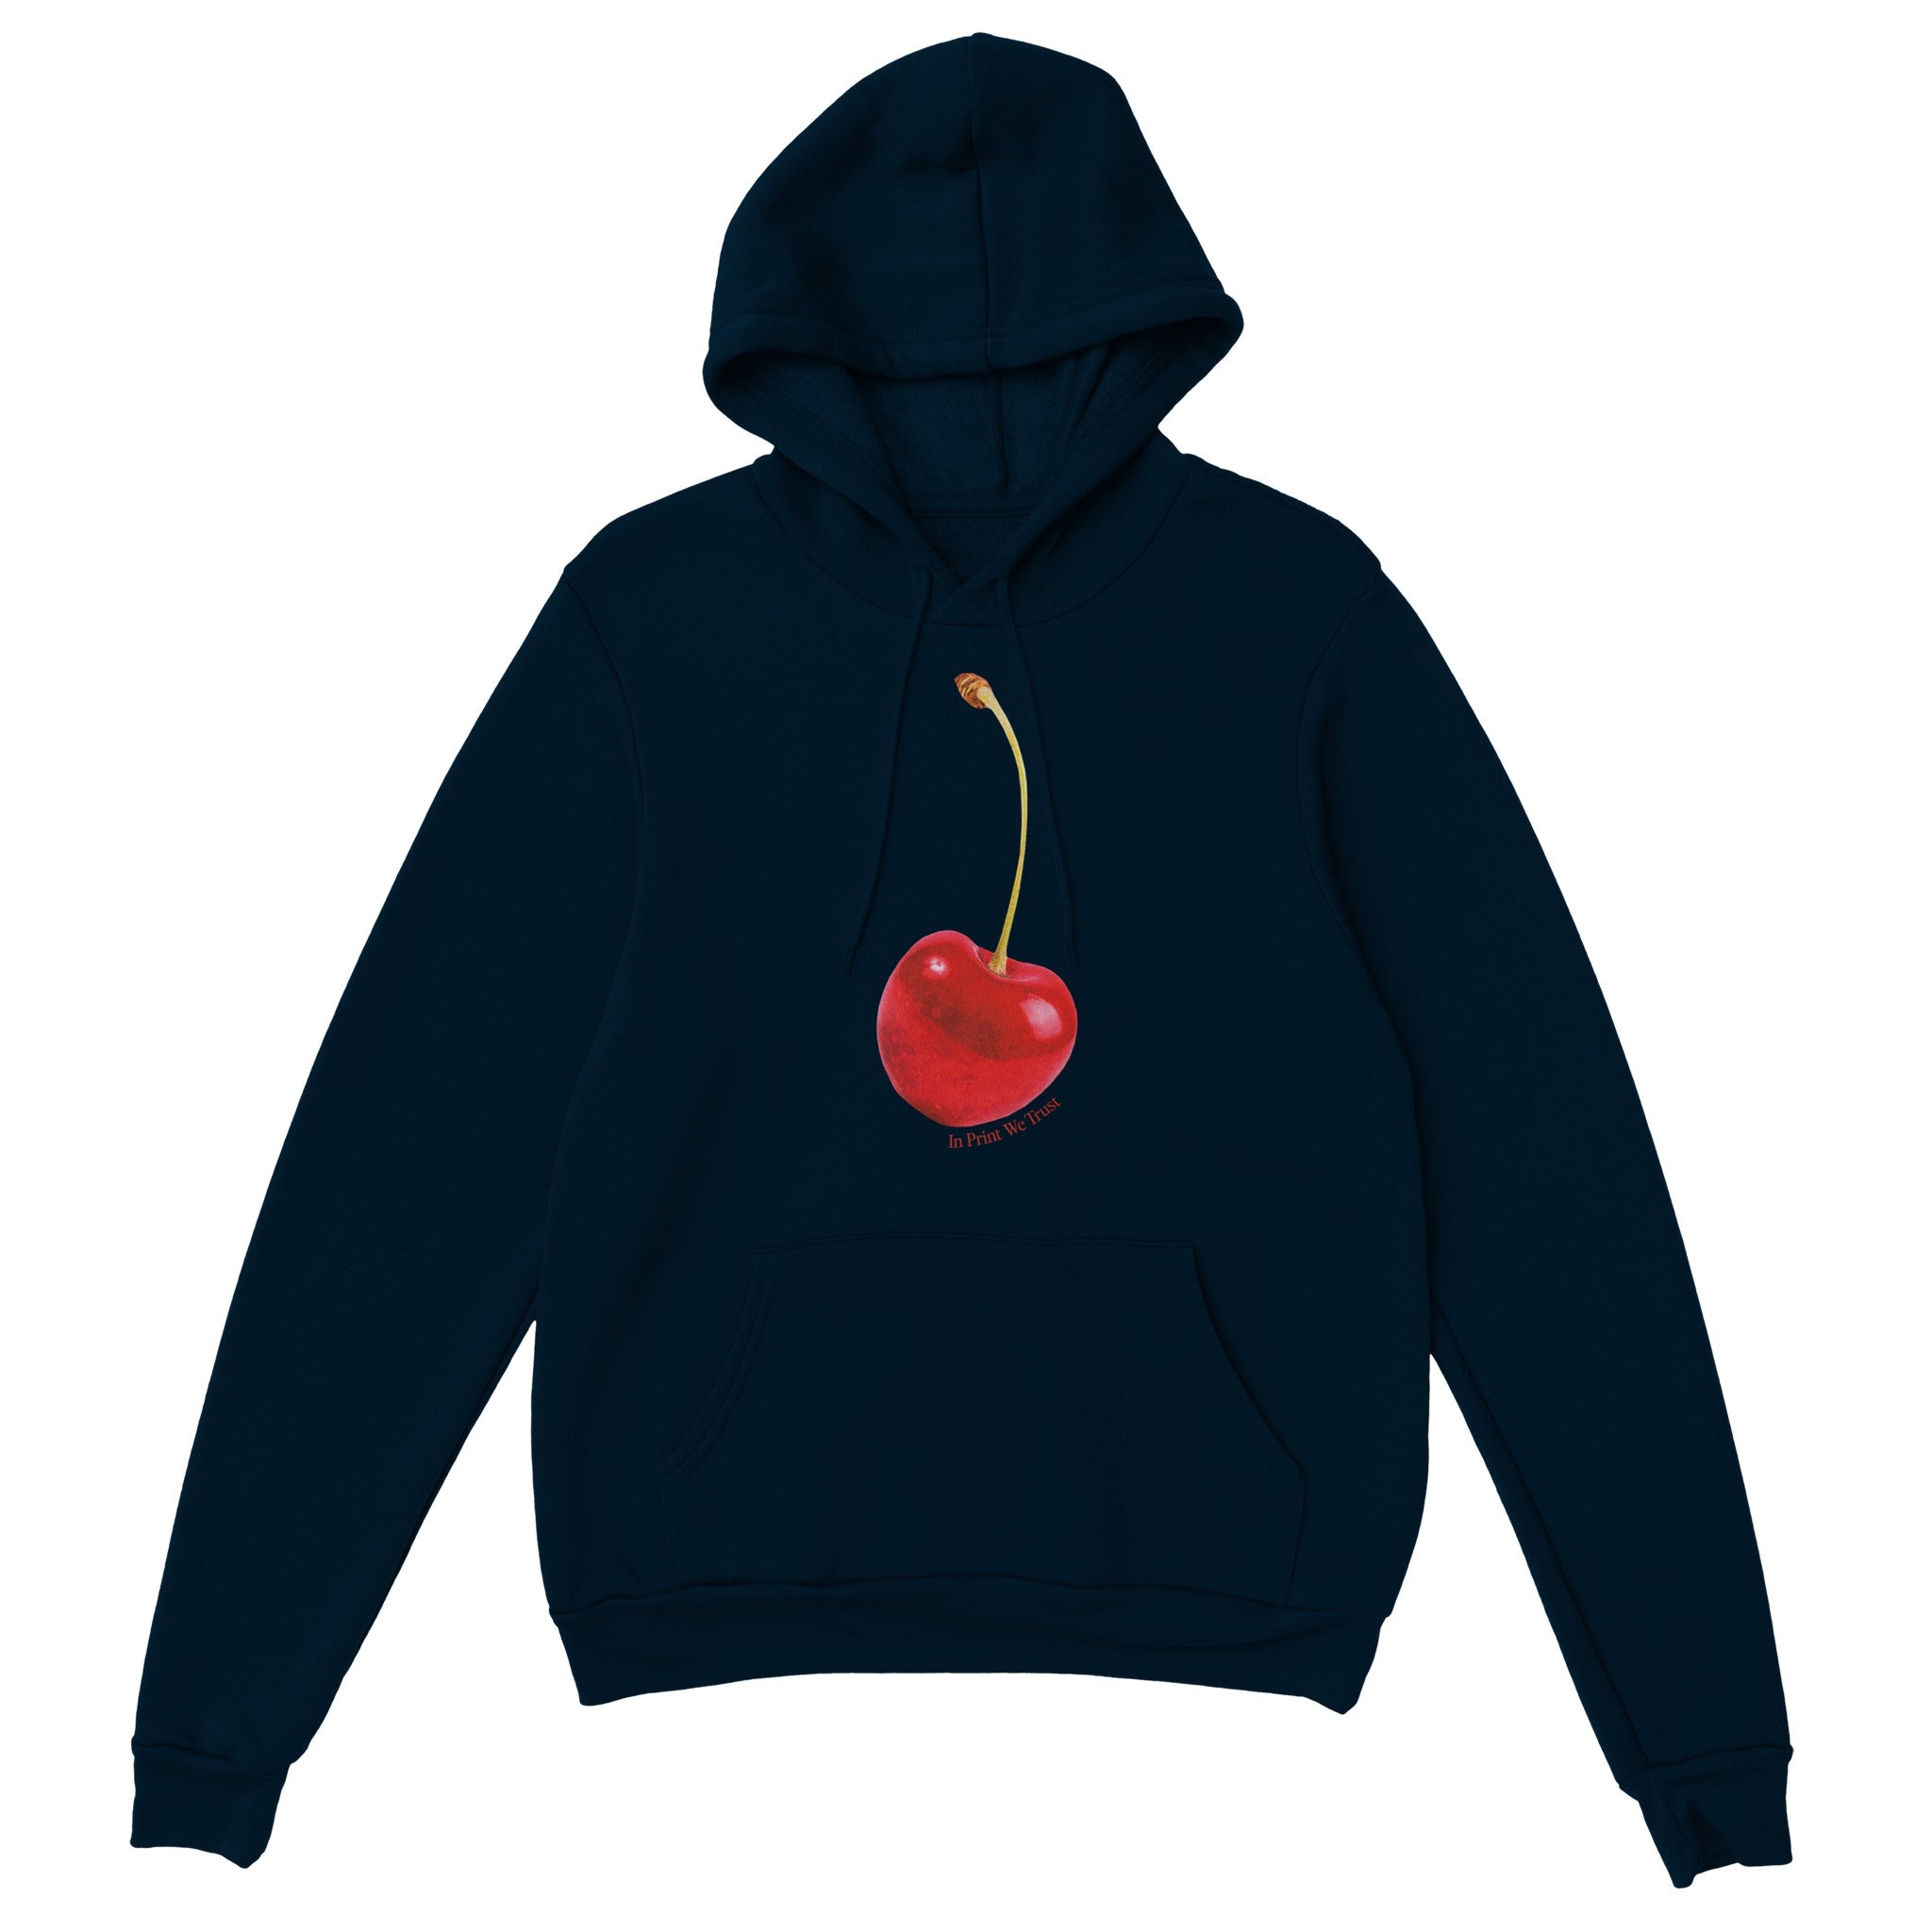 'Cherry On Top' hoodie - In Print We Trust